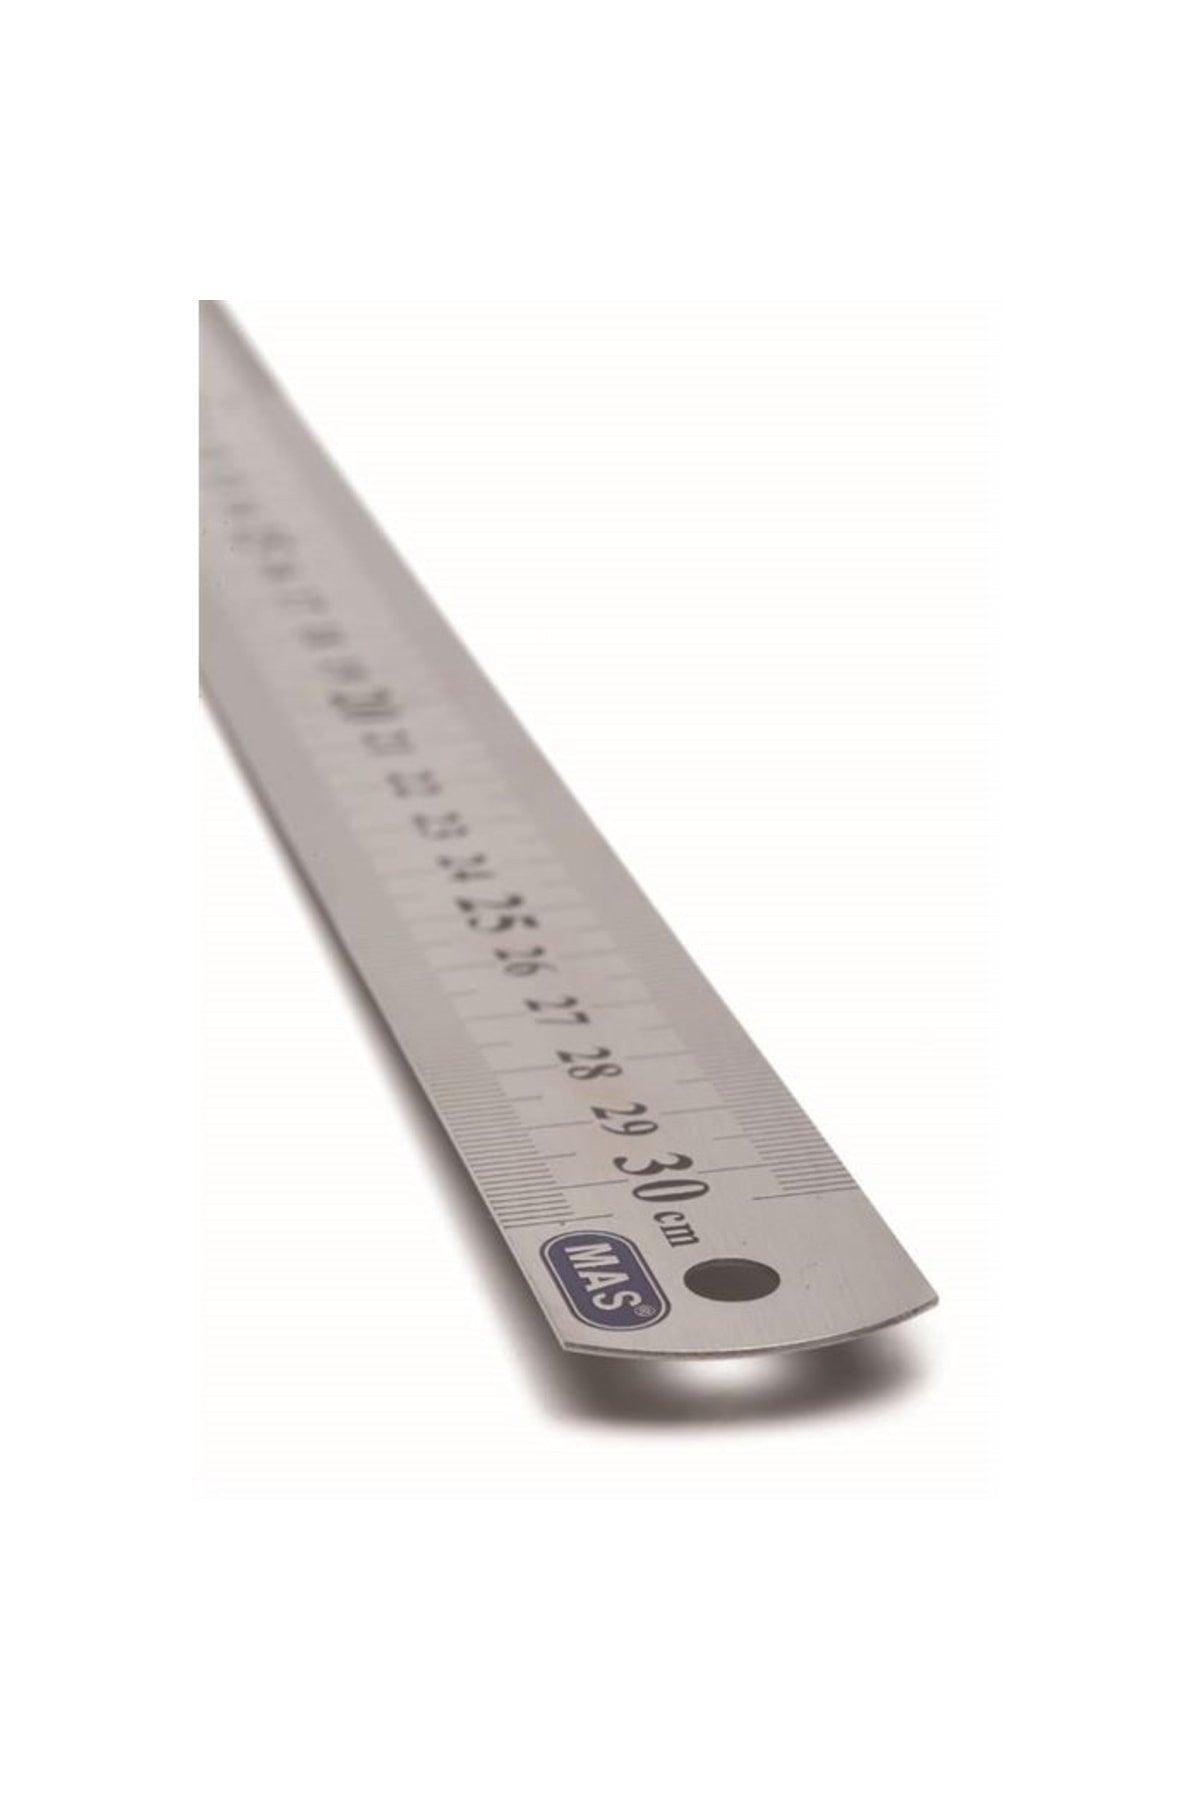 Ruler 30cm Steel 2330